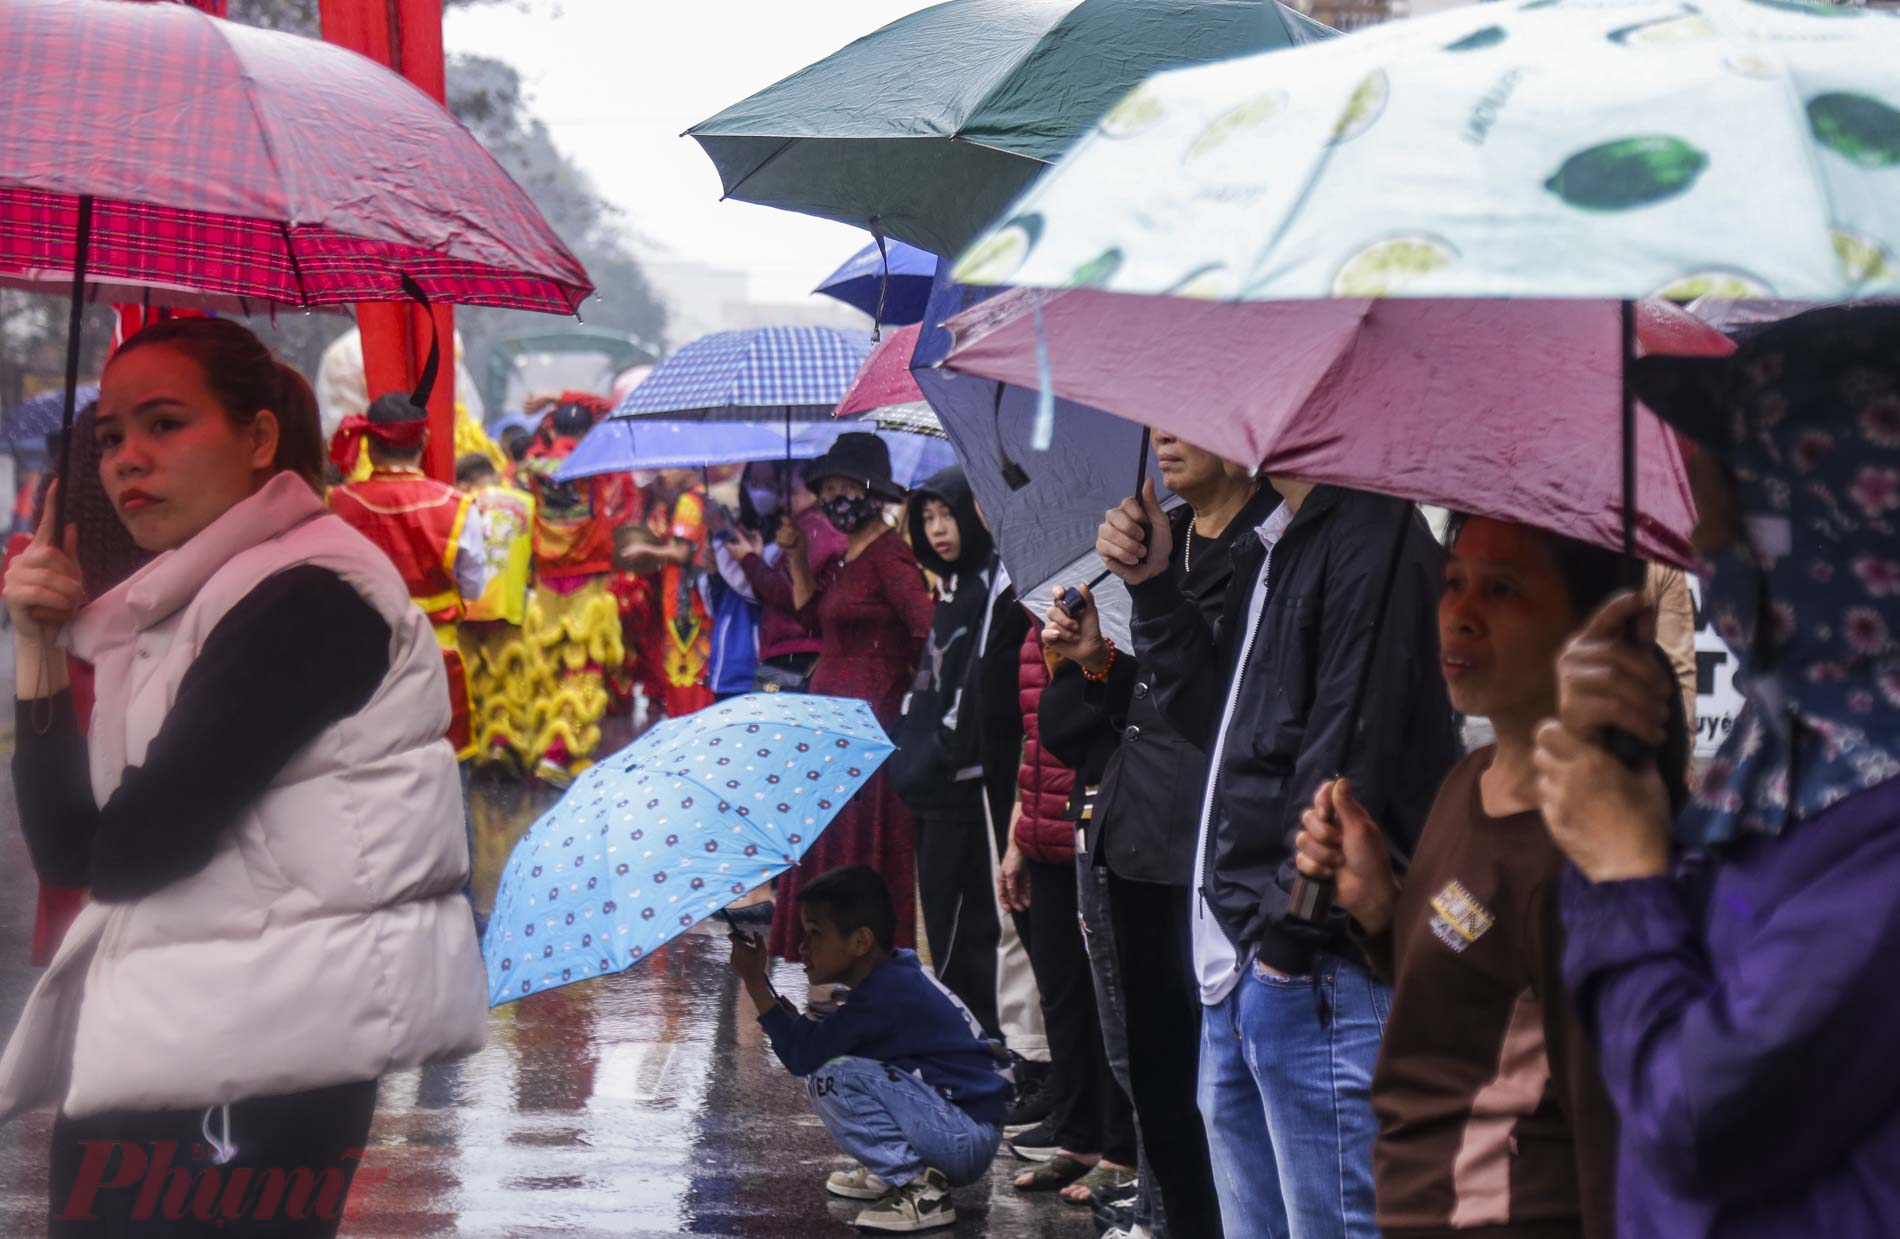 Bất chấp mưa gió, hàng ngàn người dân và du khách khắp nơi đã đội mưa rét xếp hàng trên đường để xem lễ rước.